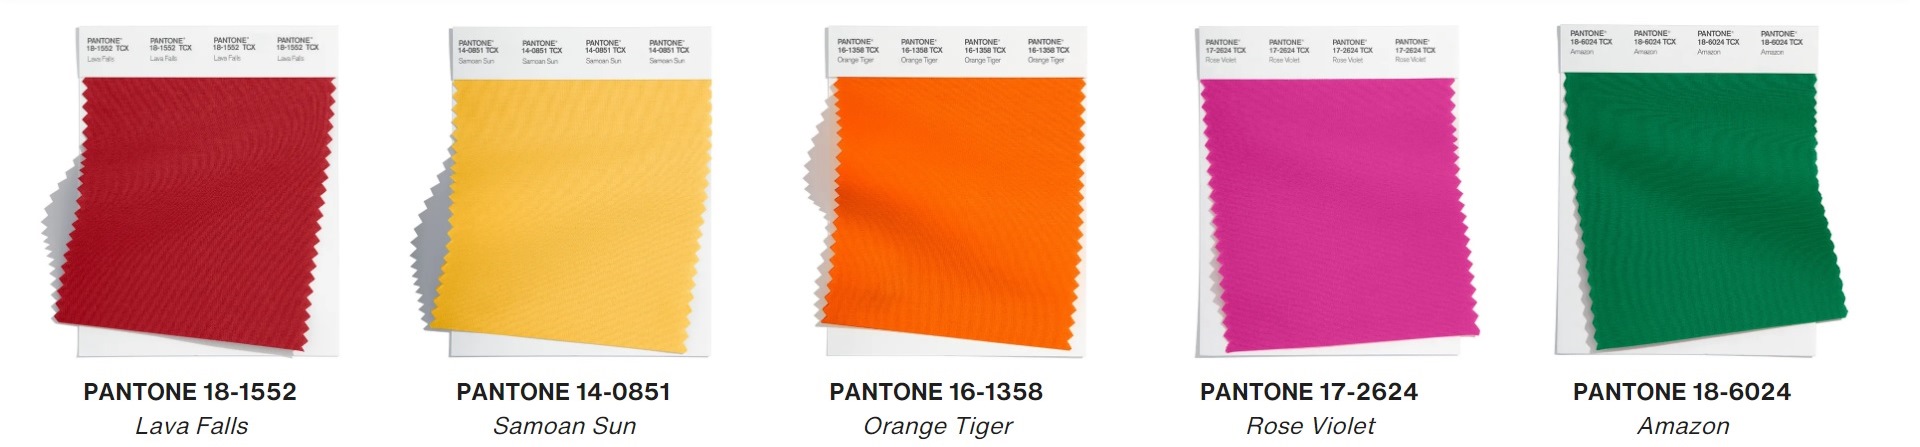 Pantone назвал самые модные цвета сезона осень-зима 2022/2023